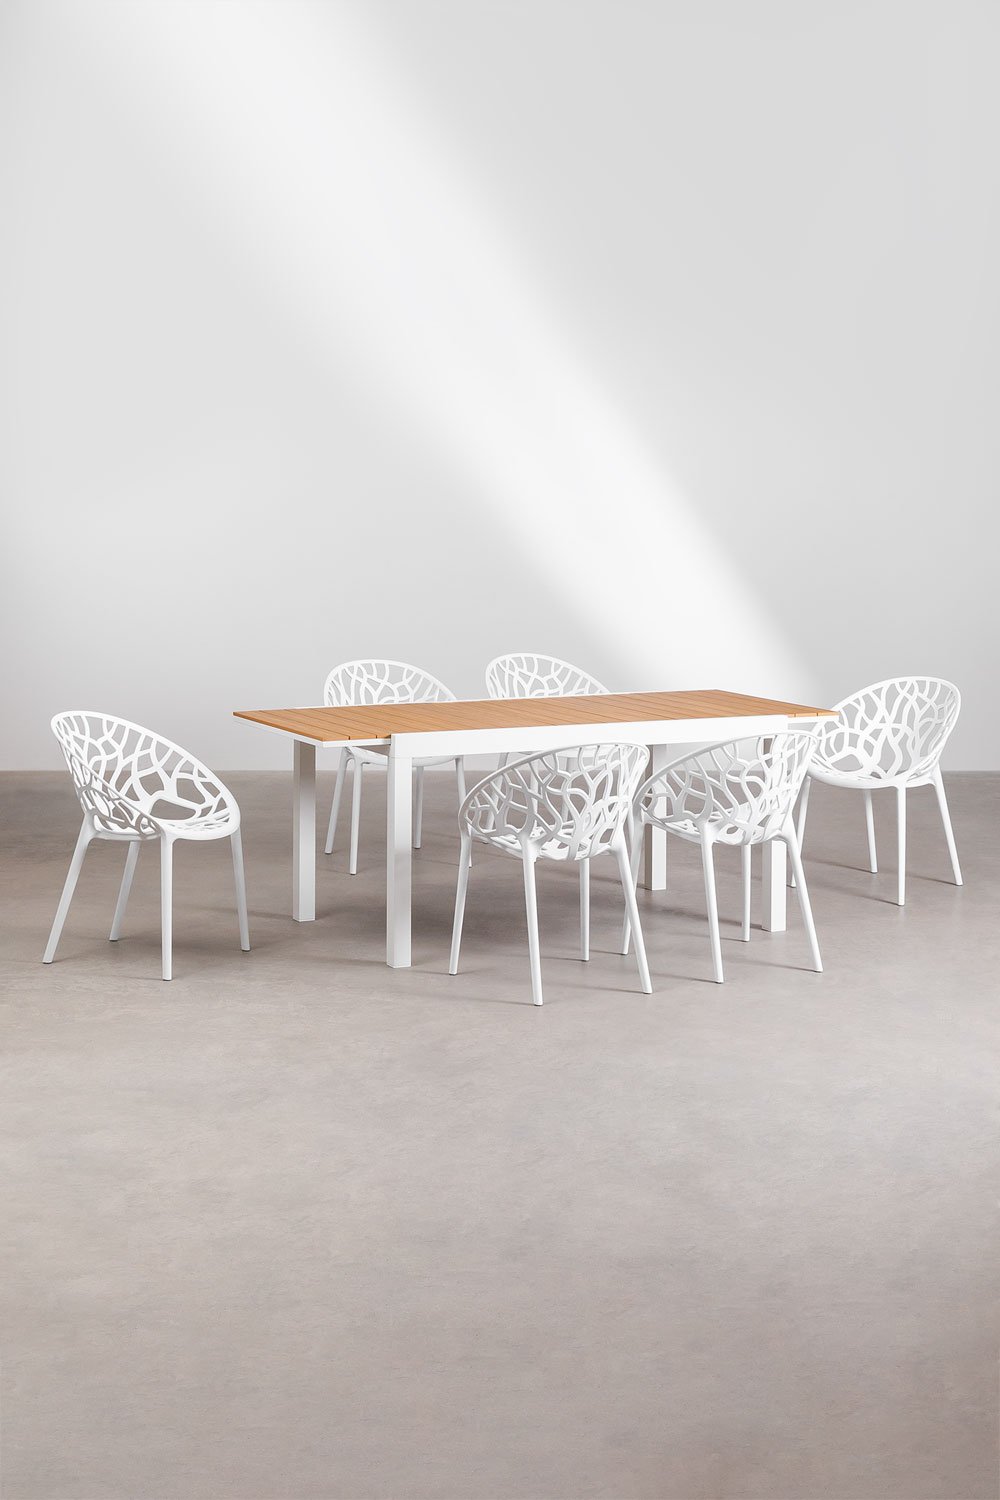 Set de Table Extensible Rectangulaire en Aluminium (150-197x90 cm) Saura et 6 Chaises de Jardin Empilables Ores , image de la galerie 1